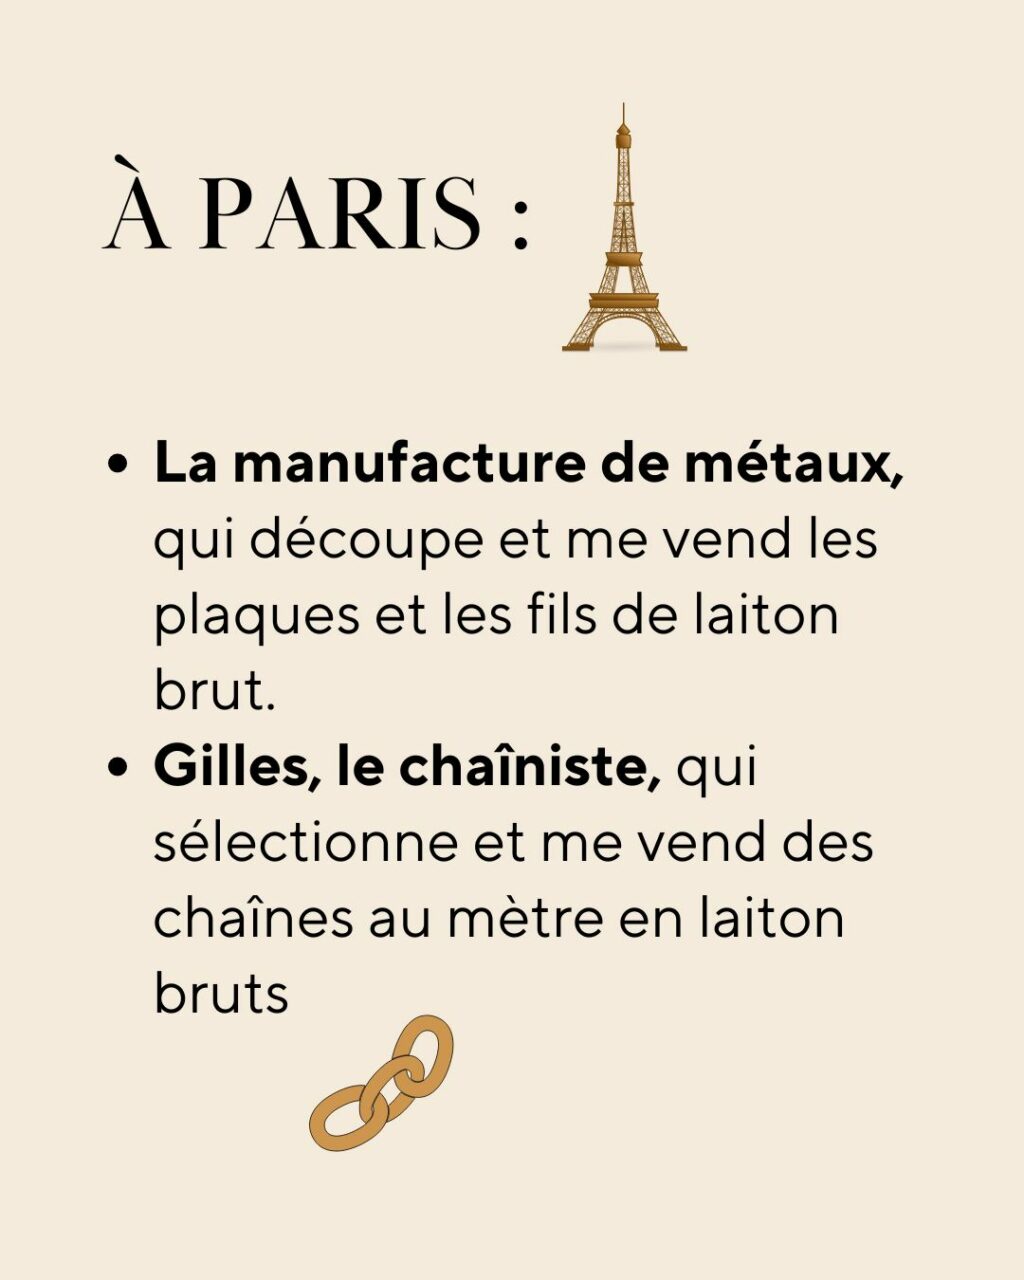 bijoux artisanaux savoir faire français créatrice